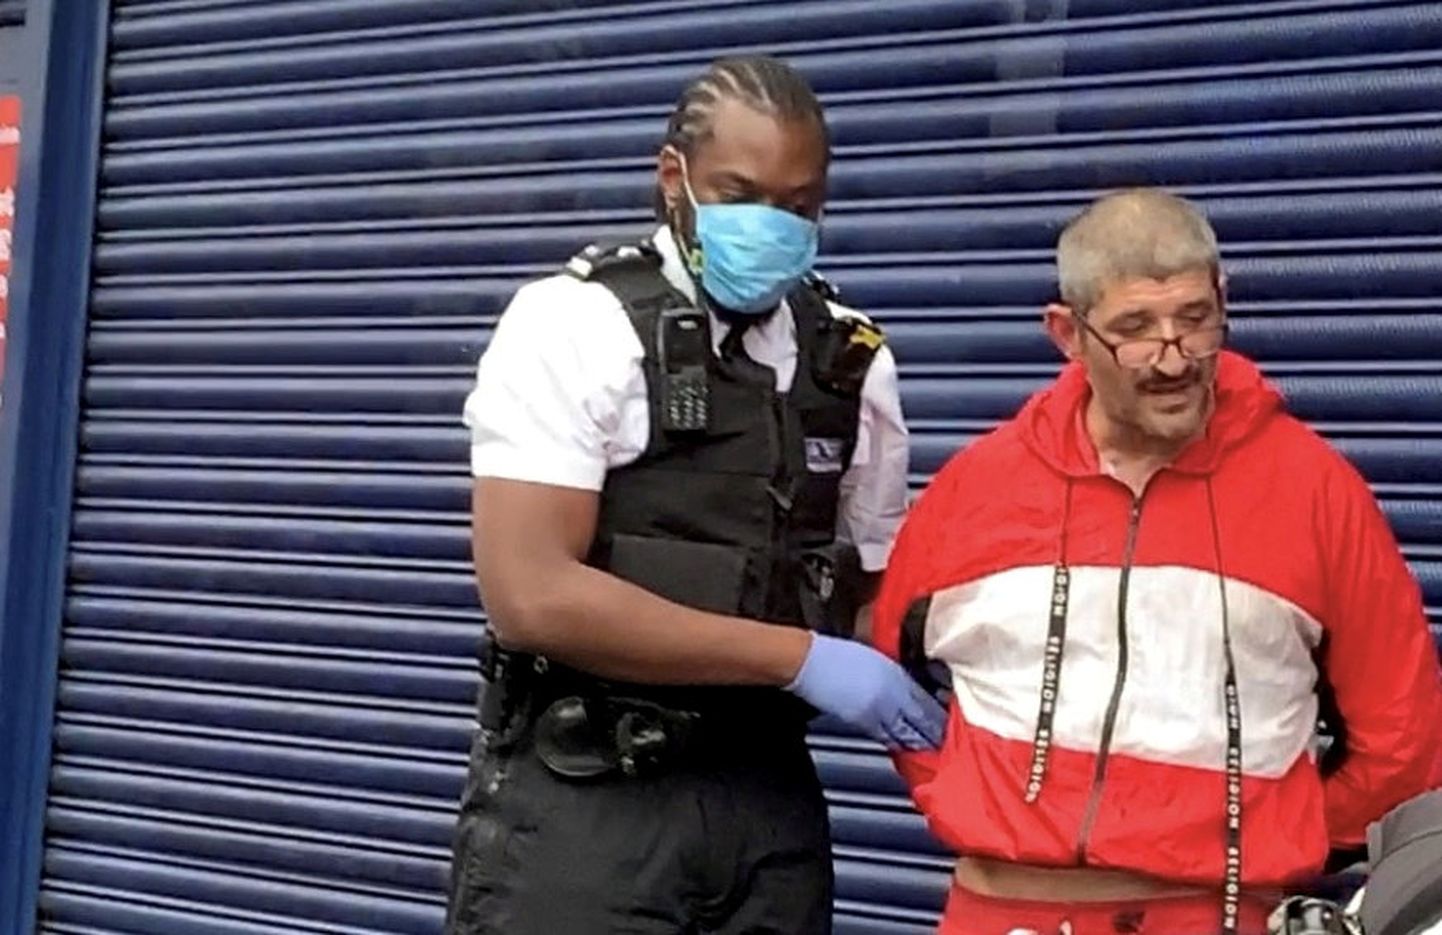 Londoni politsei pidas kinni laulja George Michaeli ekskallima Fadi Fawazi